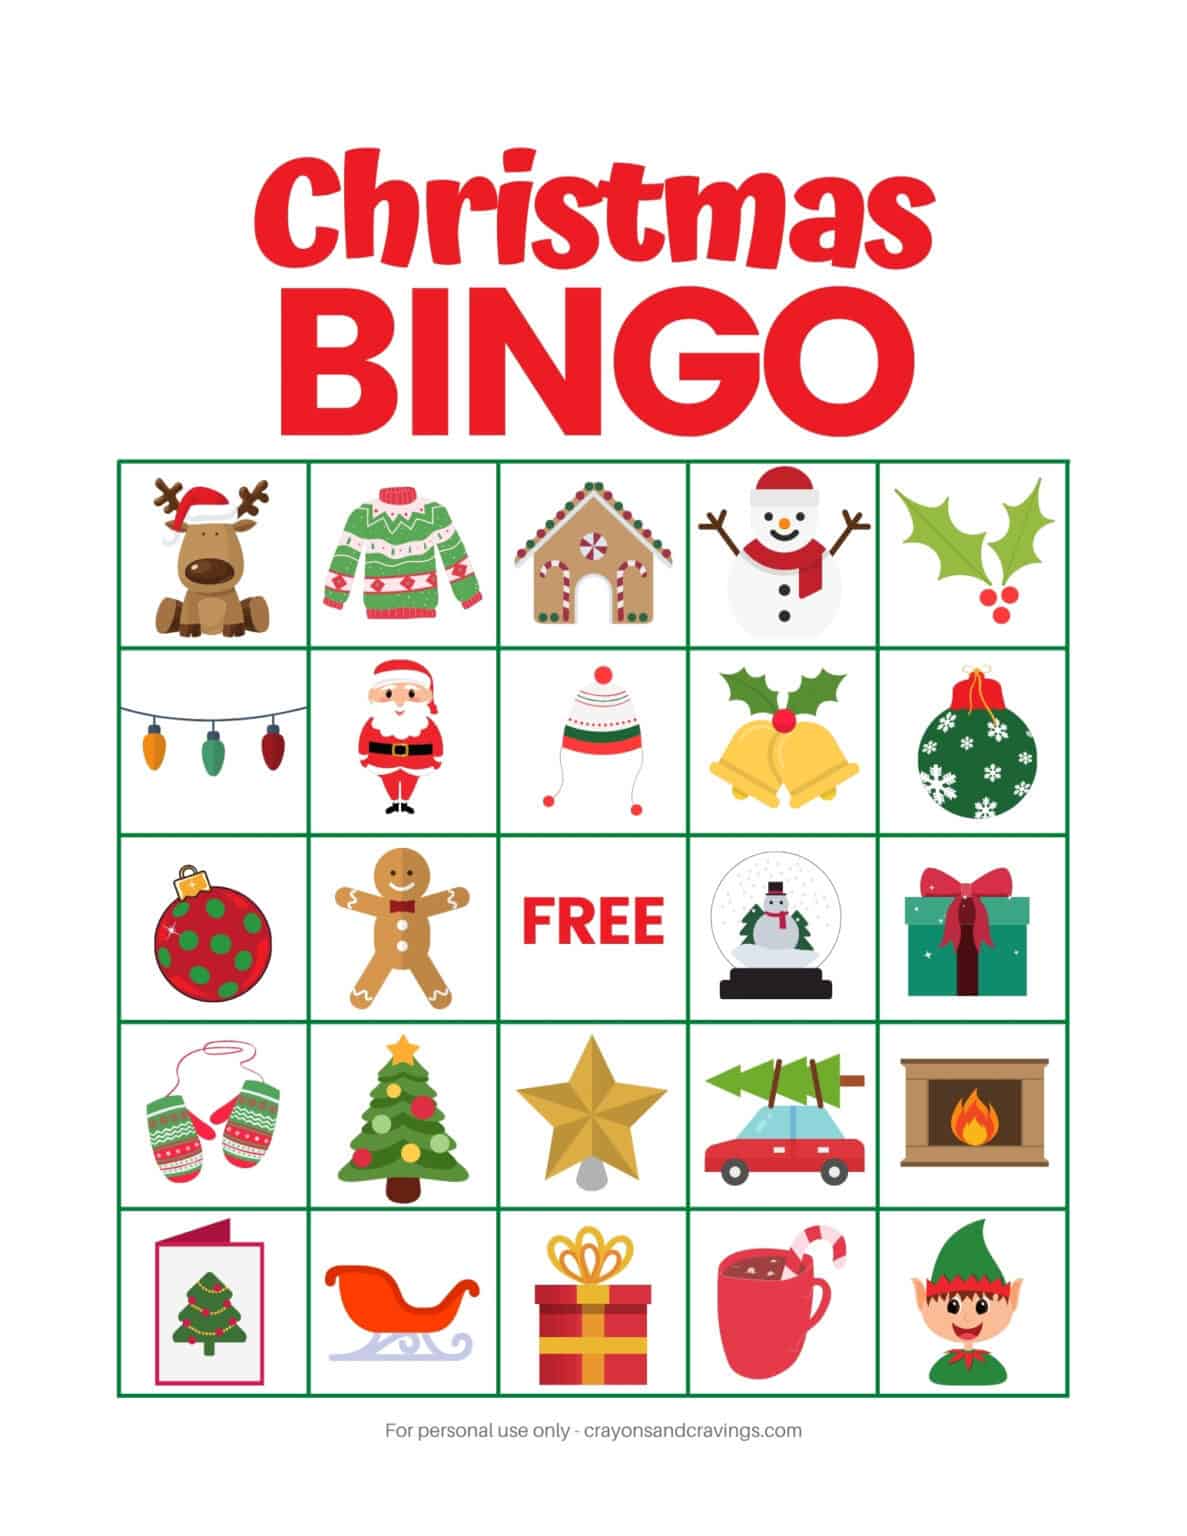 Christmas Bingo FREE Printable Christmas Game with 10 Cards!